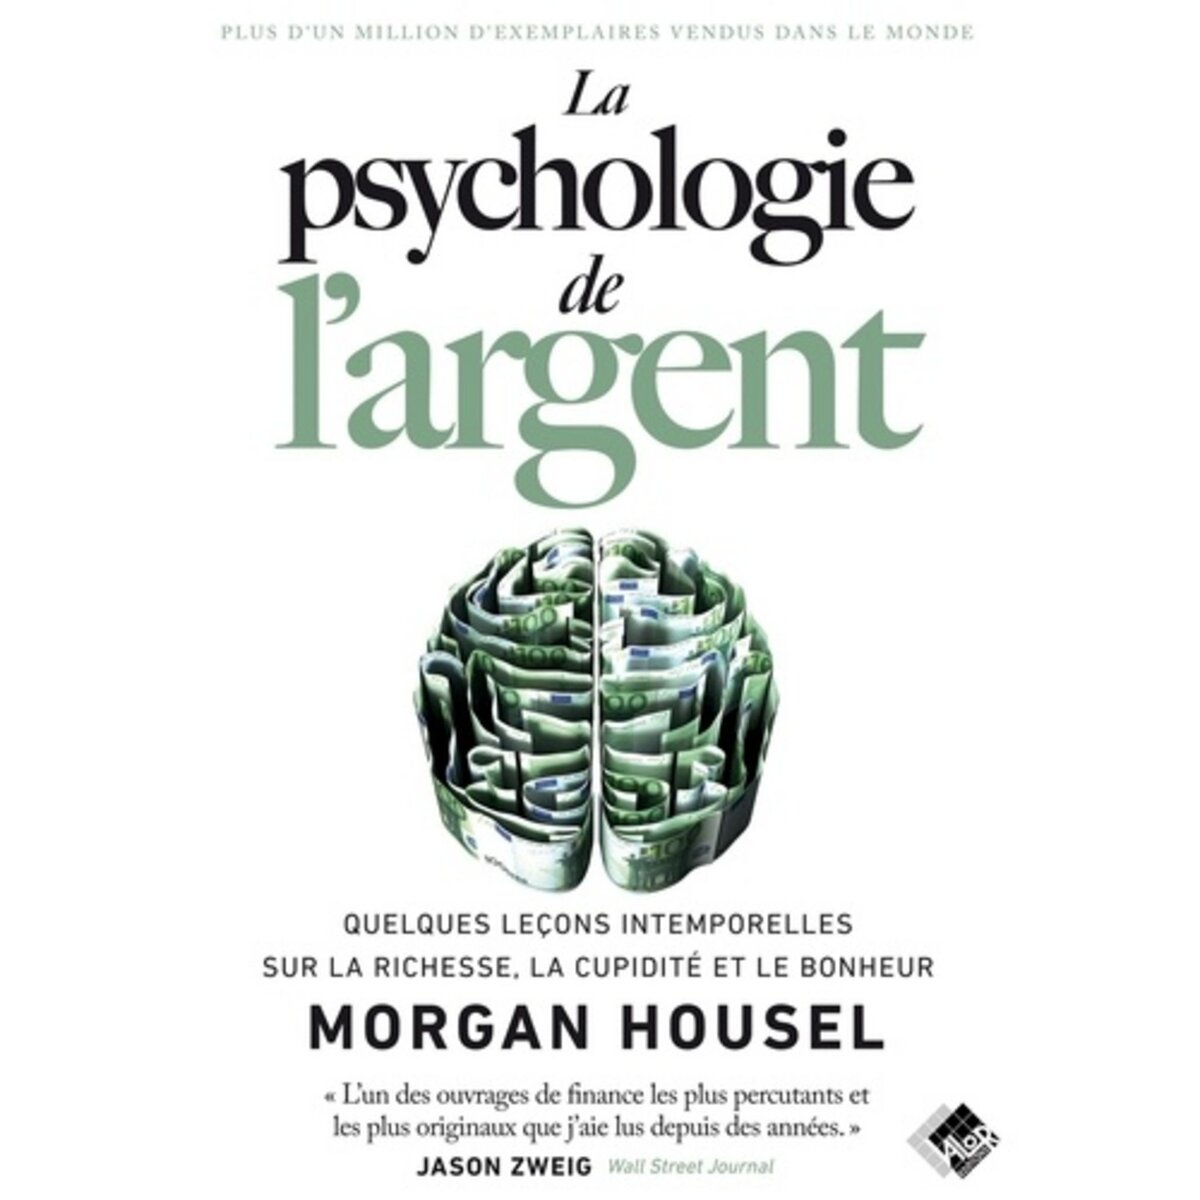  LA PSYCHOLOGIE DE L'ARGENT. QUELQUES LECONS INTEMPORELLES SUR LA RICHESSE, LA CUPIDITE ET LE BONHEUR, Housel Morgan